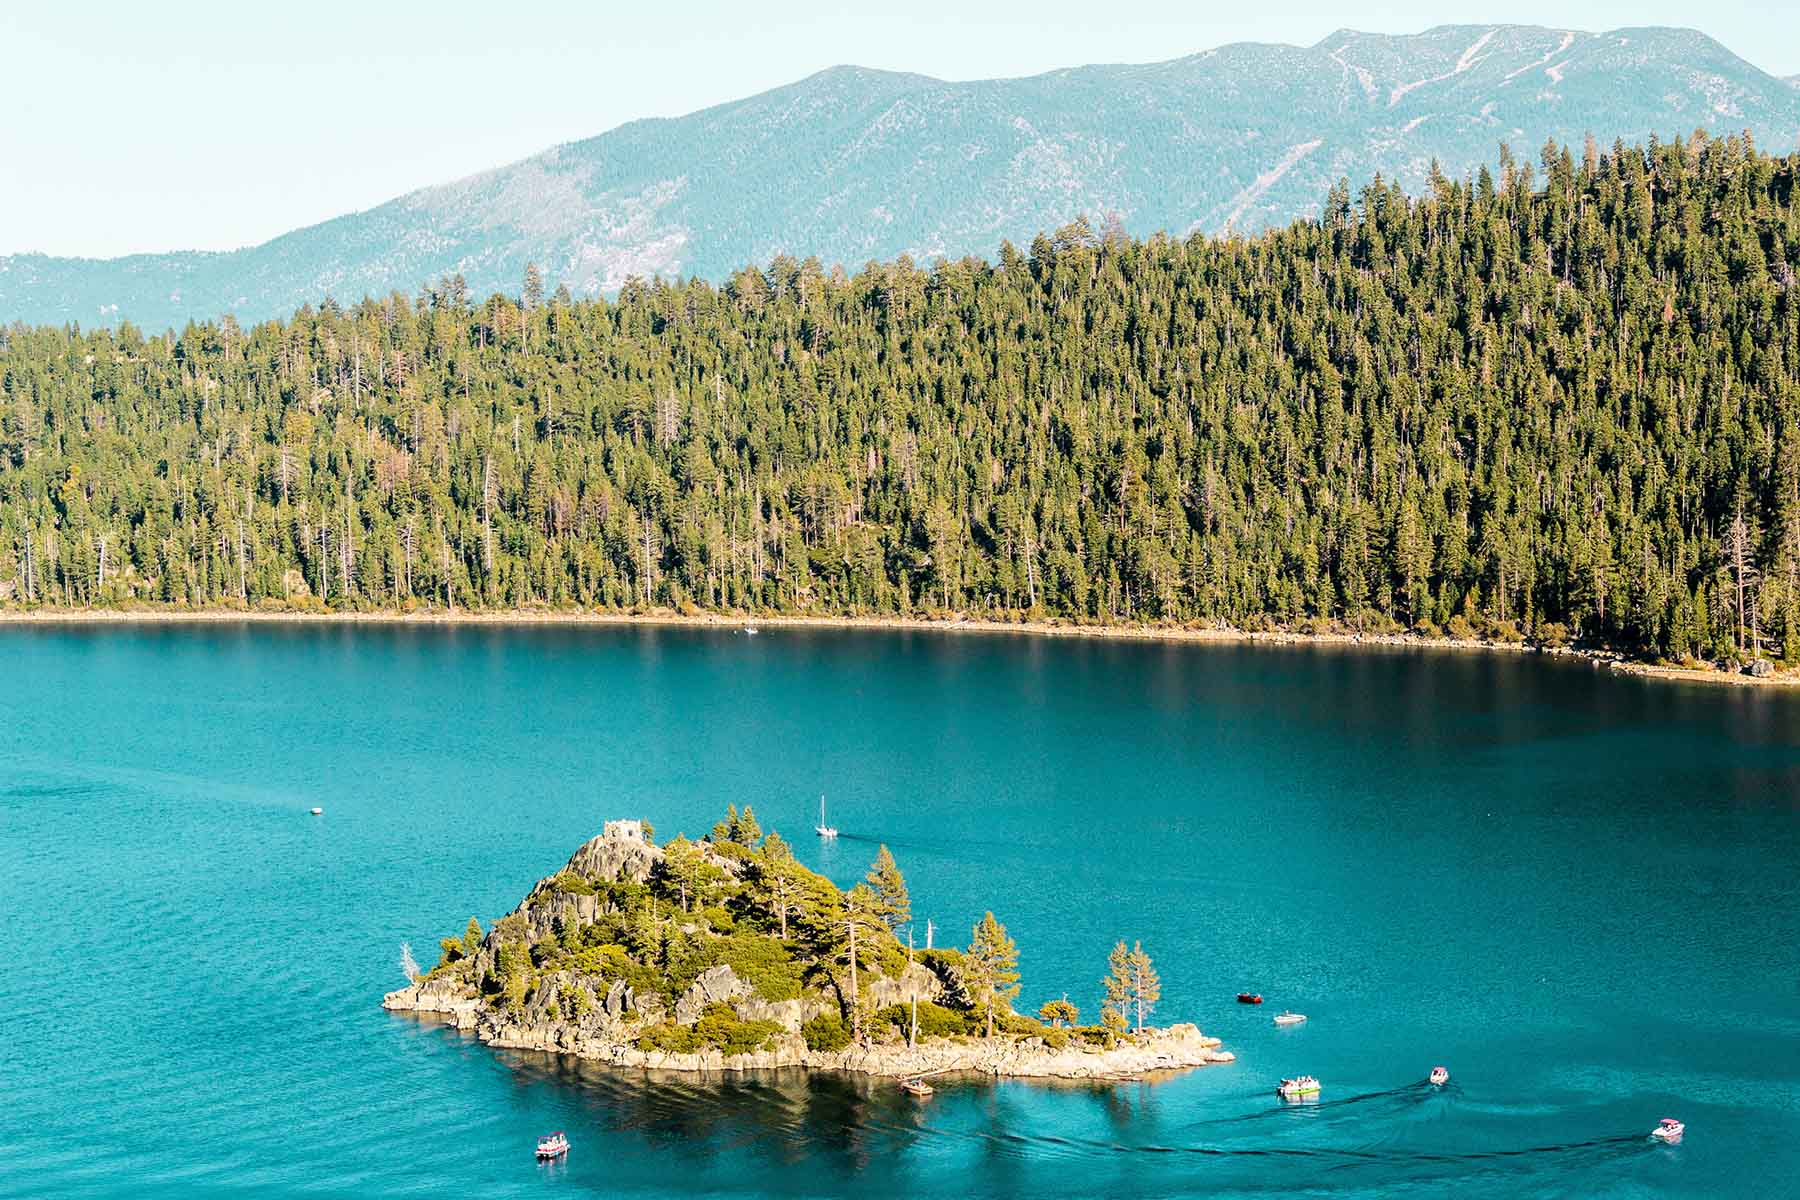 Enjoy Lake Tahoe - A Guide to Lake Tahoe’s State Parks